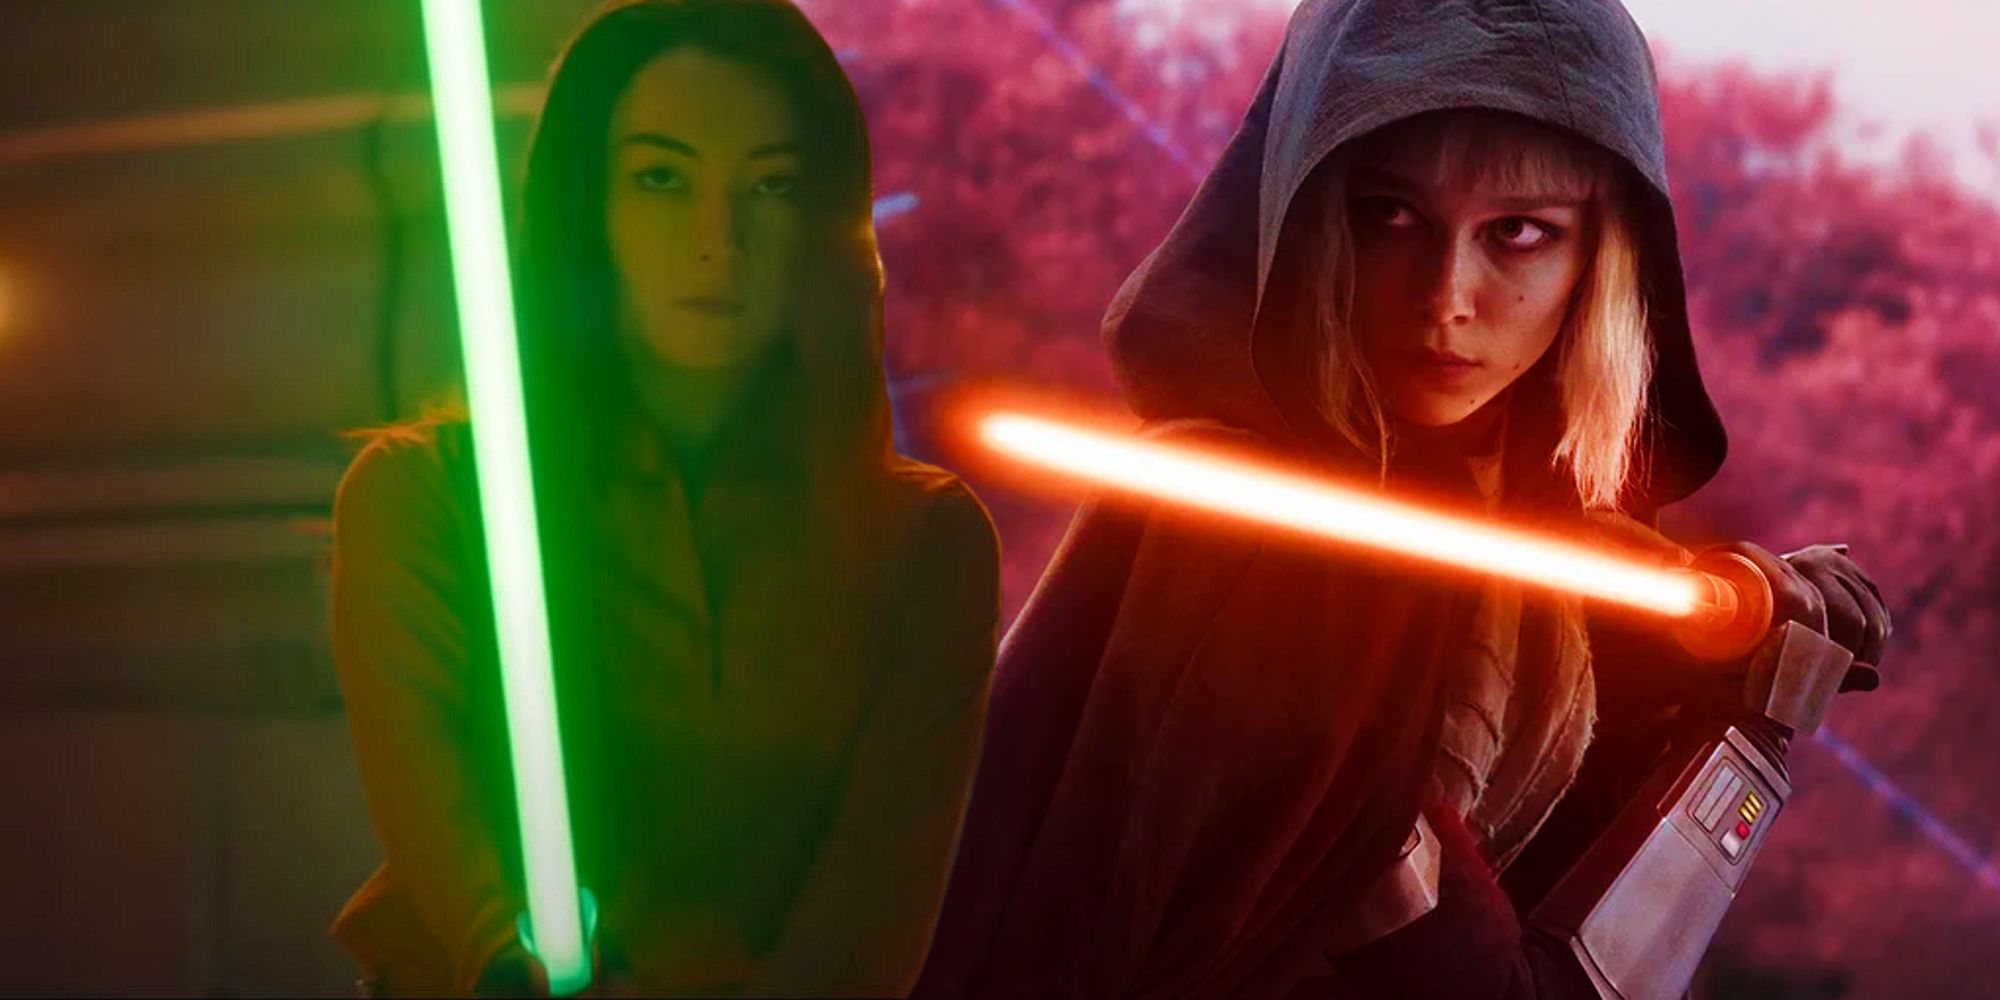 Increíble arte de Star Wars captura al nuevo rival Jedi oscuro de Sabine